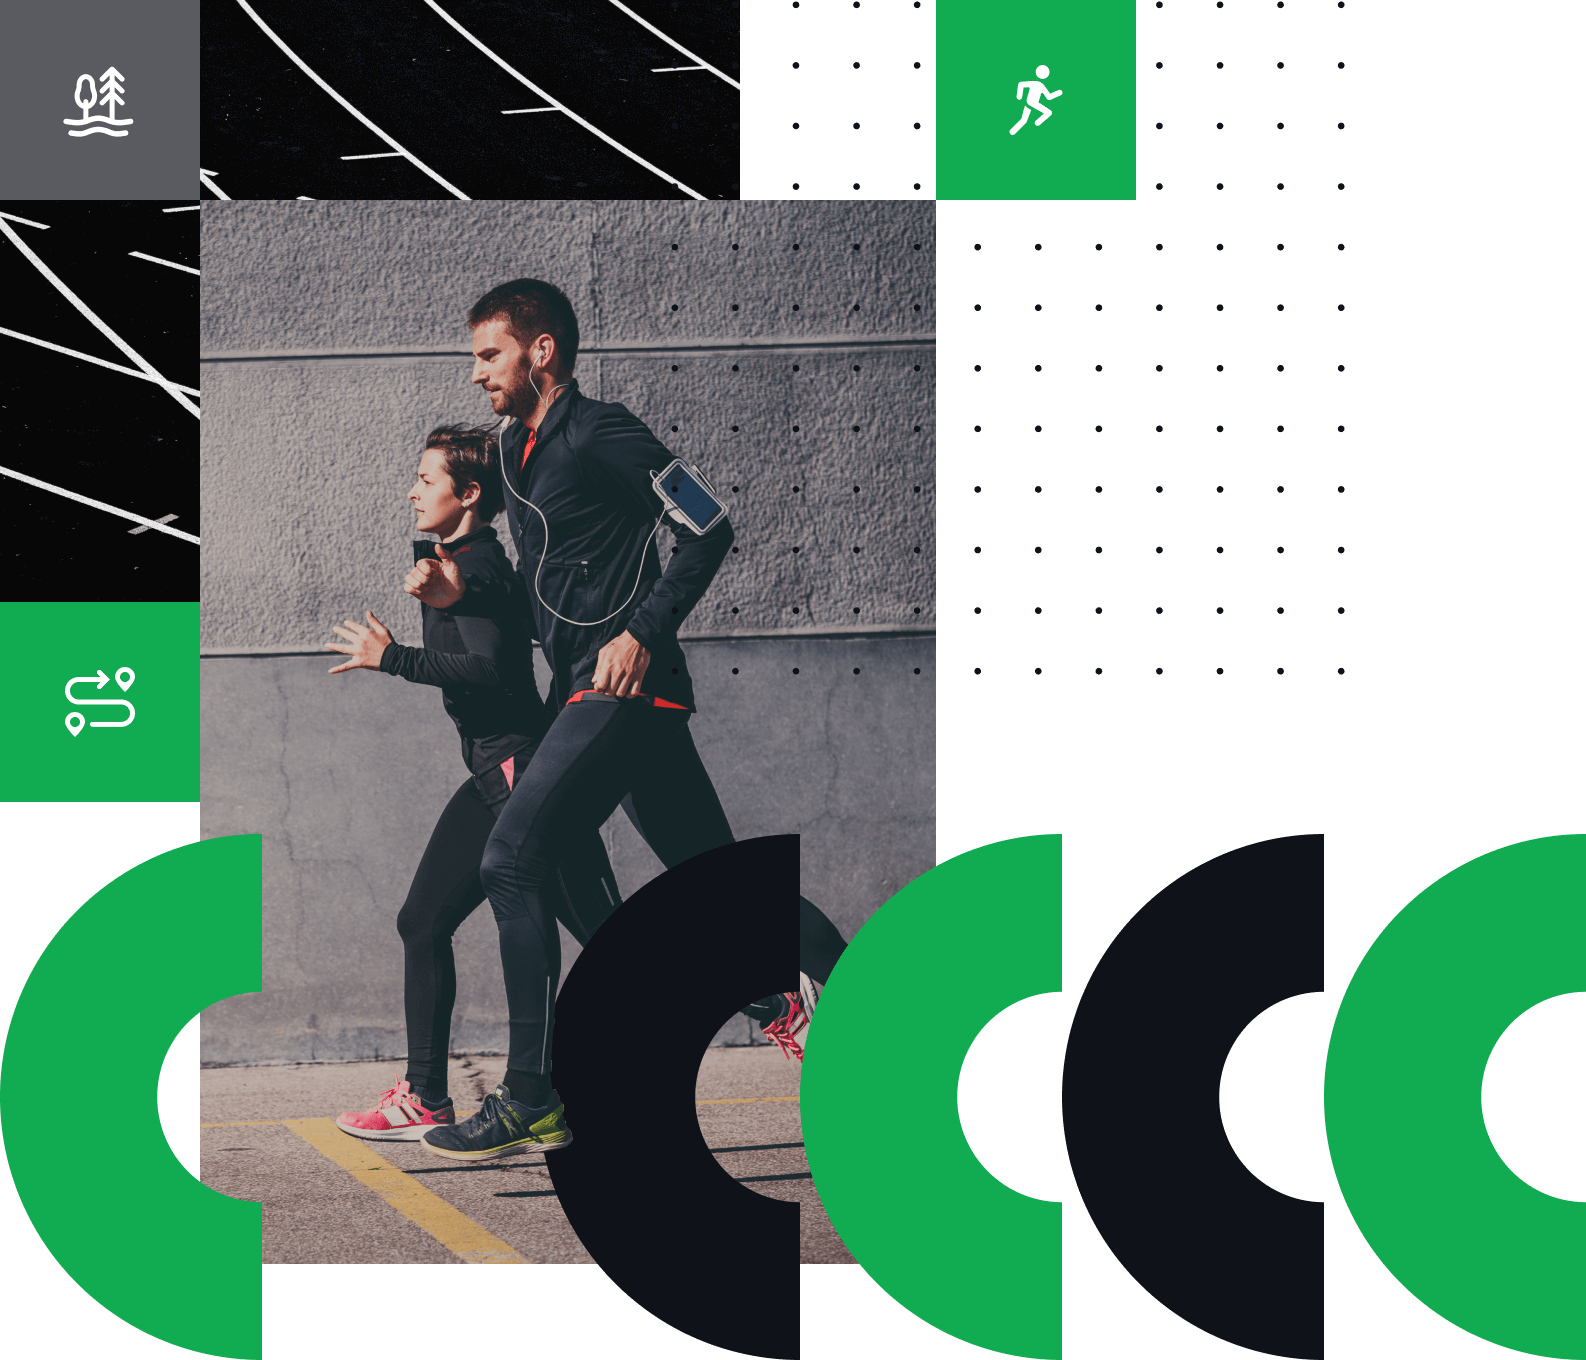 2 usuarios de la app joggo salen a correr